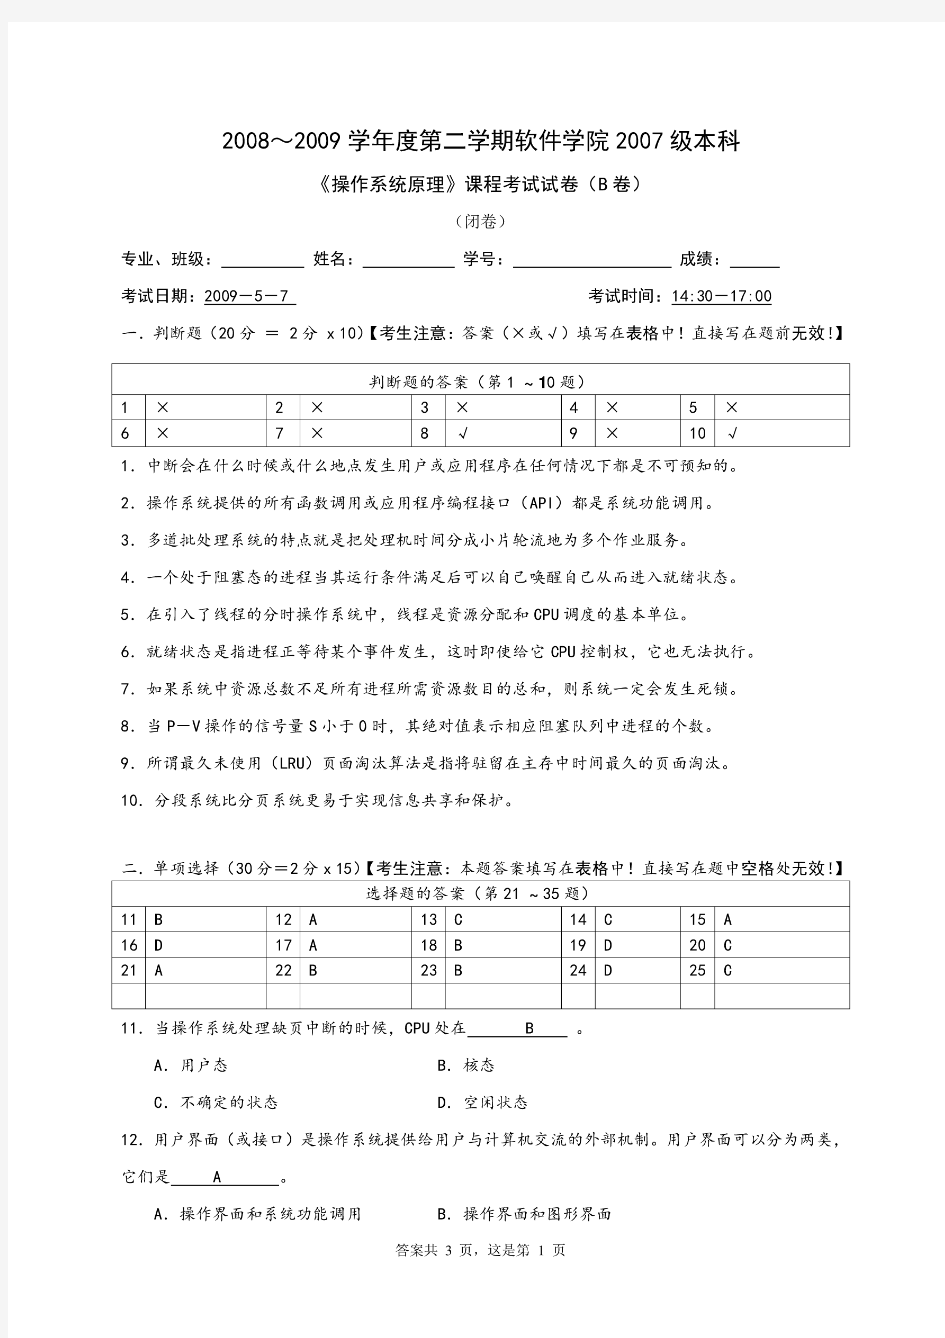 华中科技大学操作系统3(本部07级)期末考试试卷-B答案